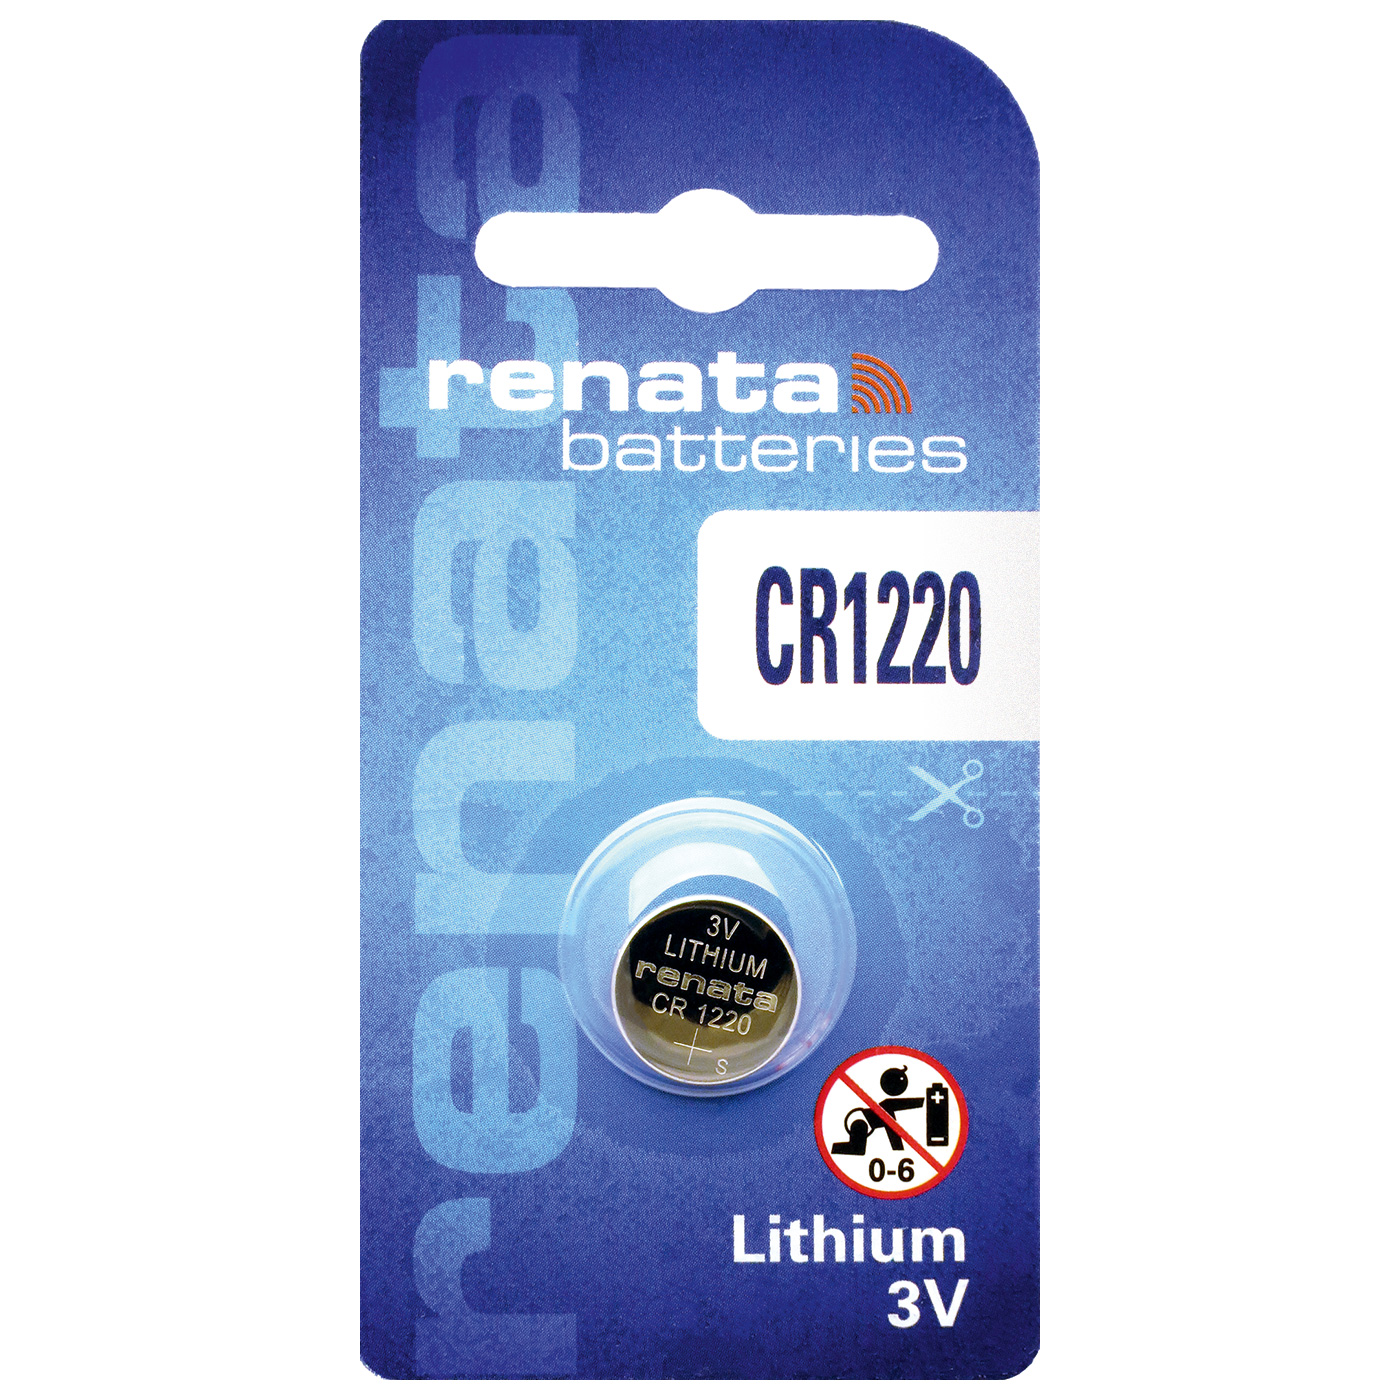 Renata CR 1220 lithium